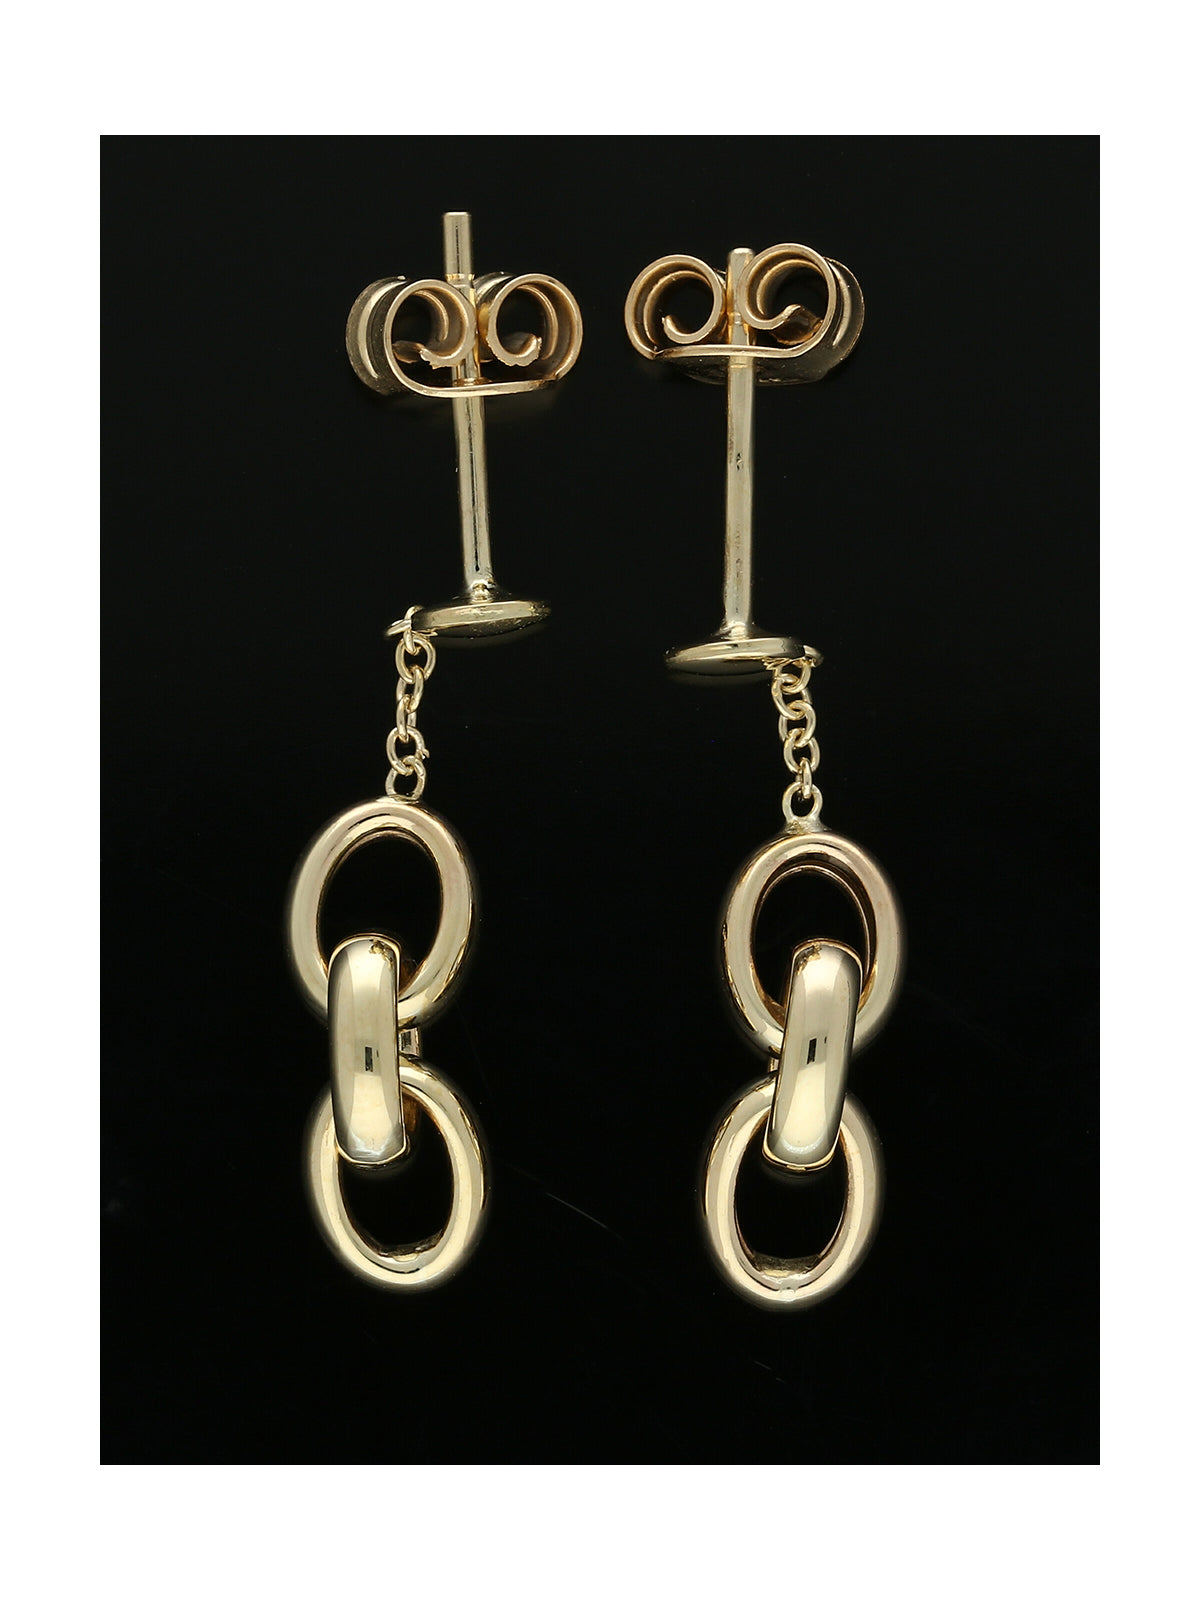 Triple Loop Drop Earrings in 9ct Yellow Gold